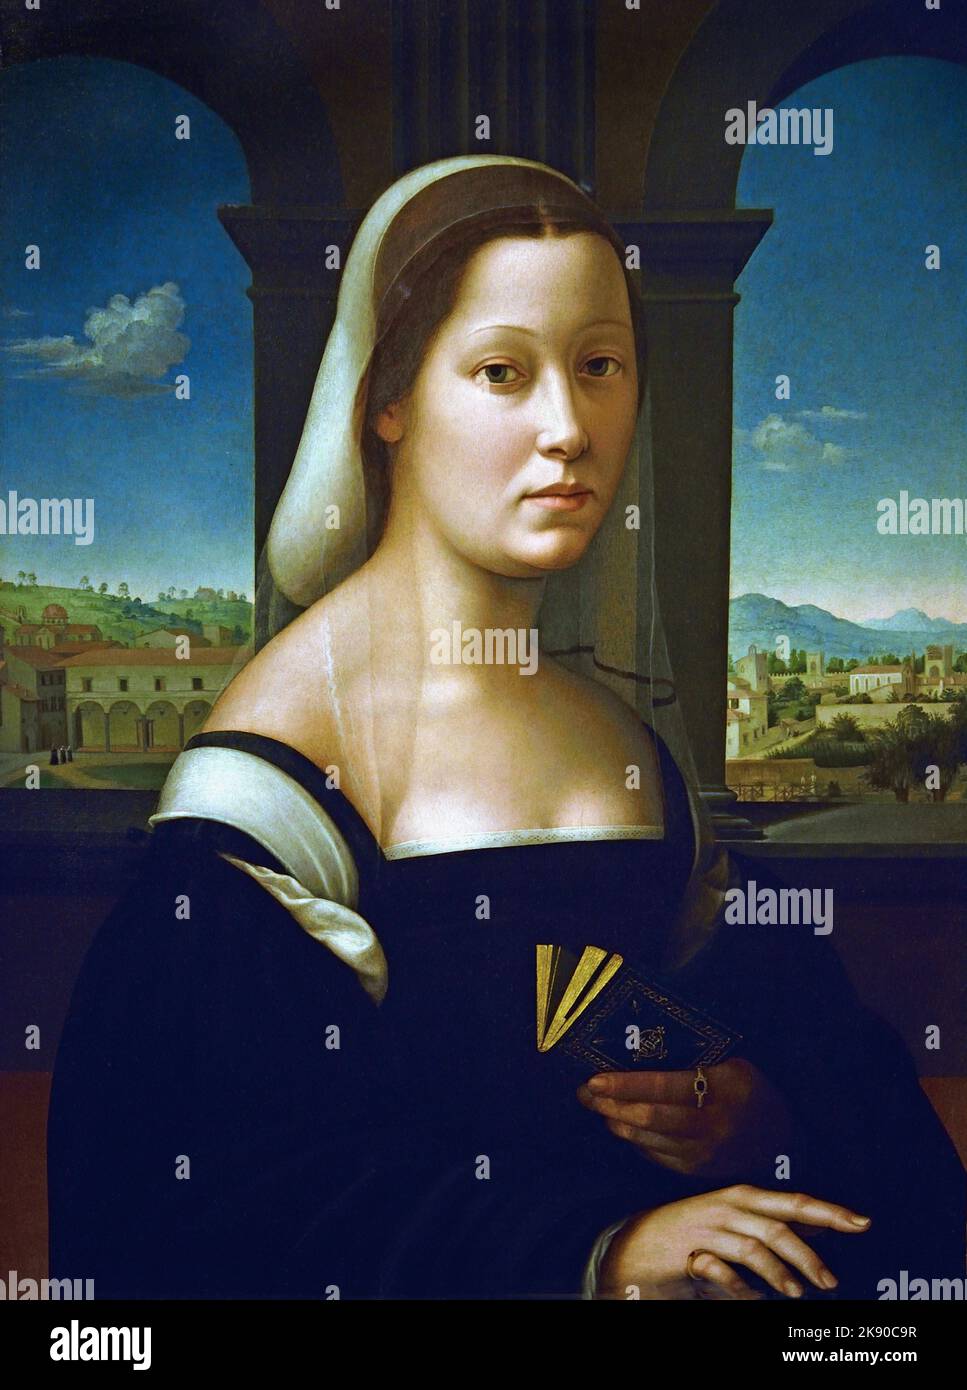 Ritratto di una donna, Uffizi, Firenze, di Giuliano Bugiardini 1475 –1555 pittore e disegnatore italiano che lavora nello stile tardo-rinascimentale noto come manierismo. Foto Stock